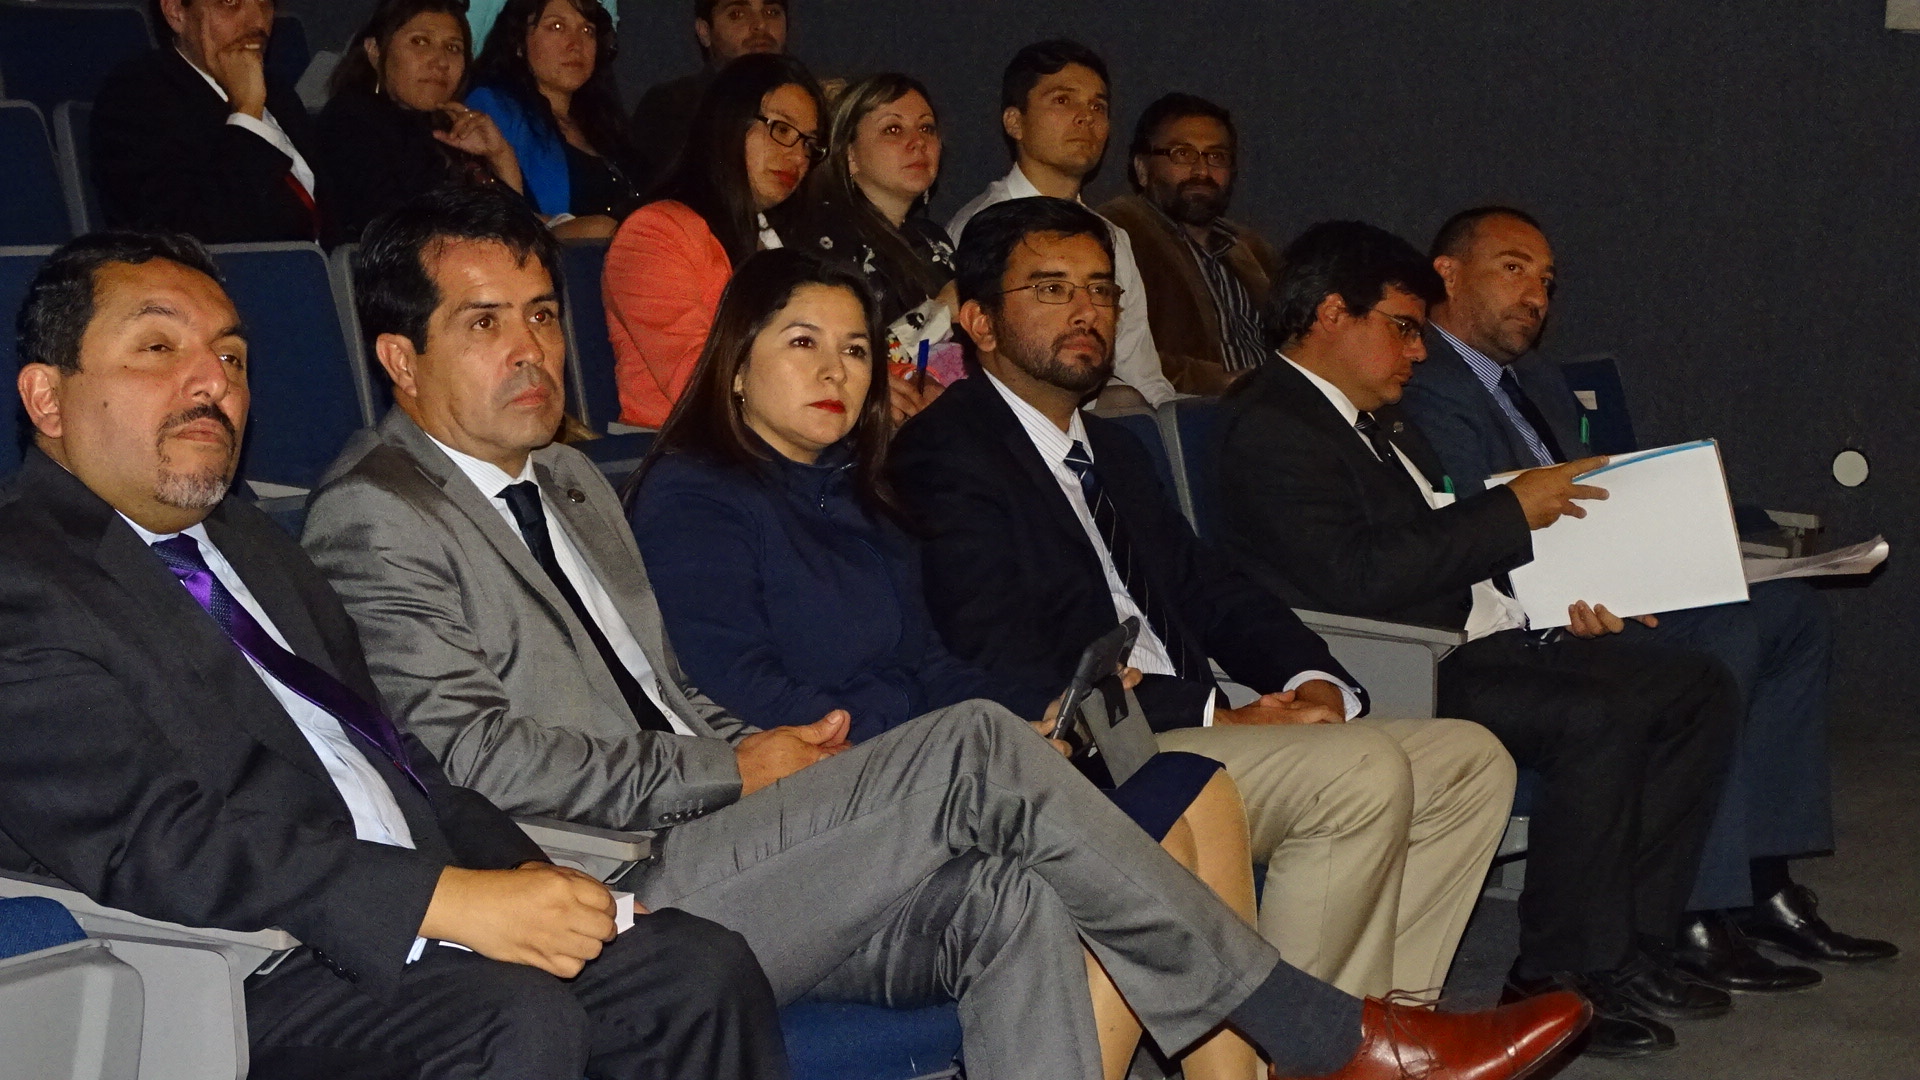 La jornada jurídica organizada en Calama fue muy bien valorada por los participantes. Al centro, la Defensora Regional de Antofagasta.